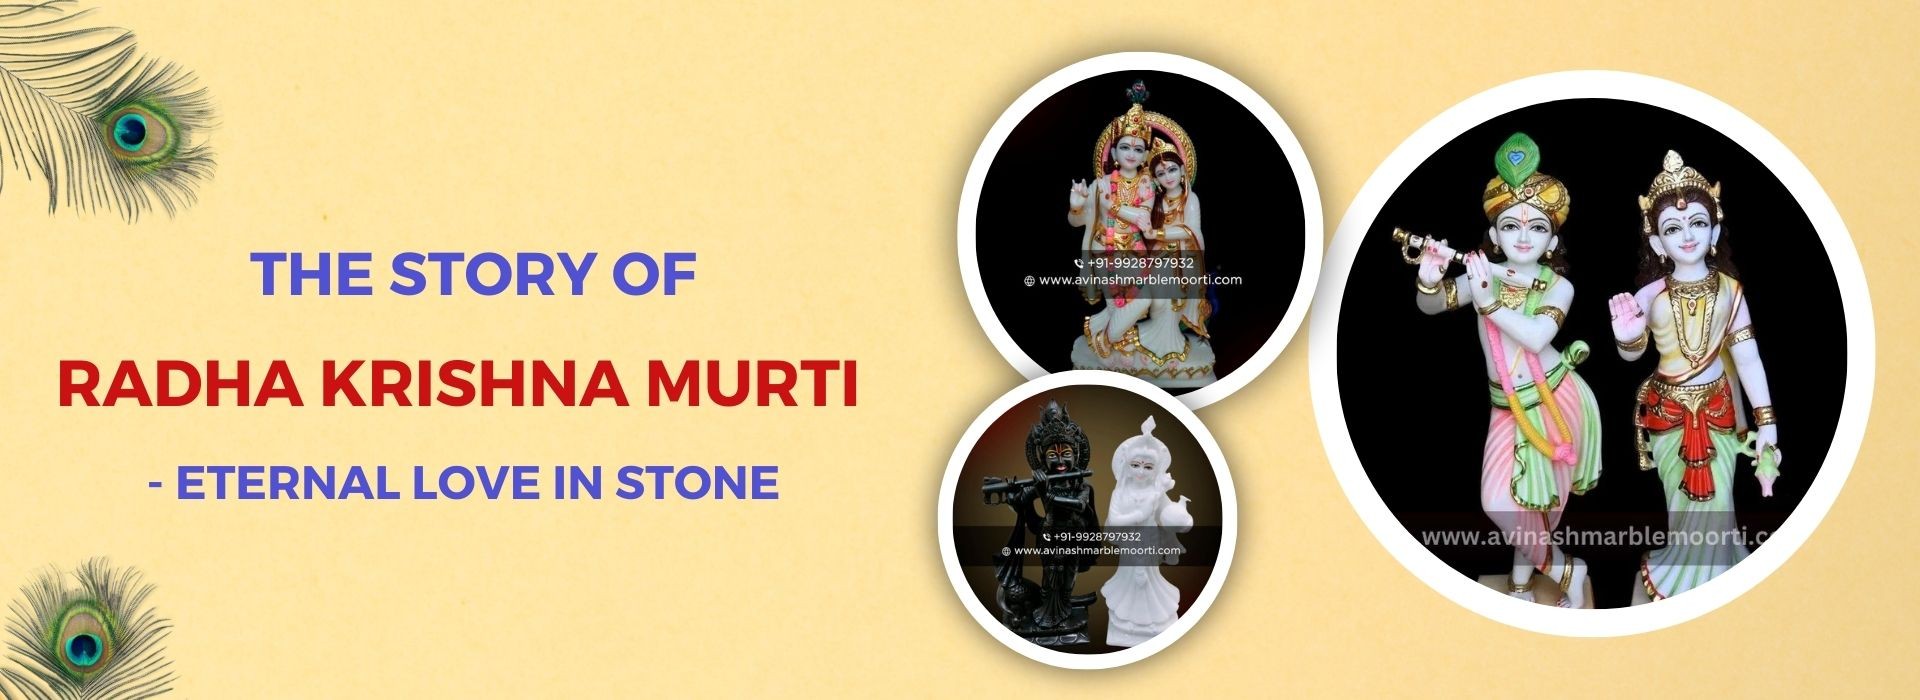 The Story of Radha Krishna Murti - Eternal Love in Stone